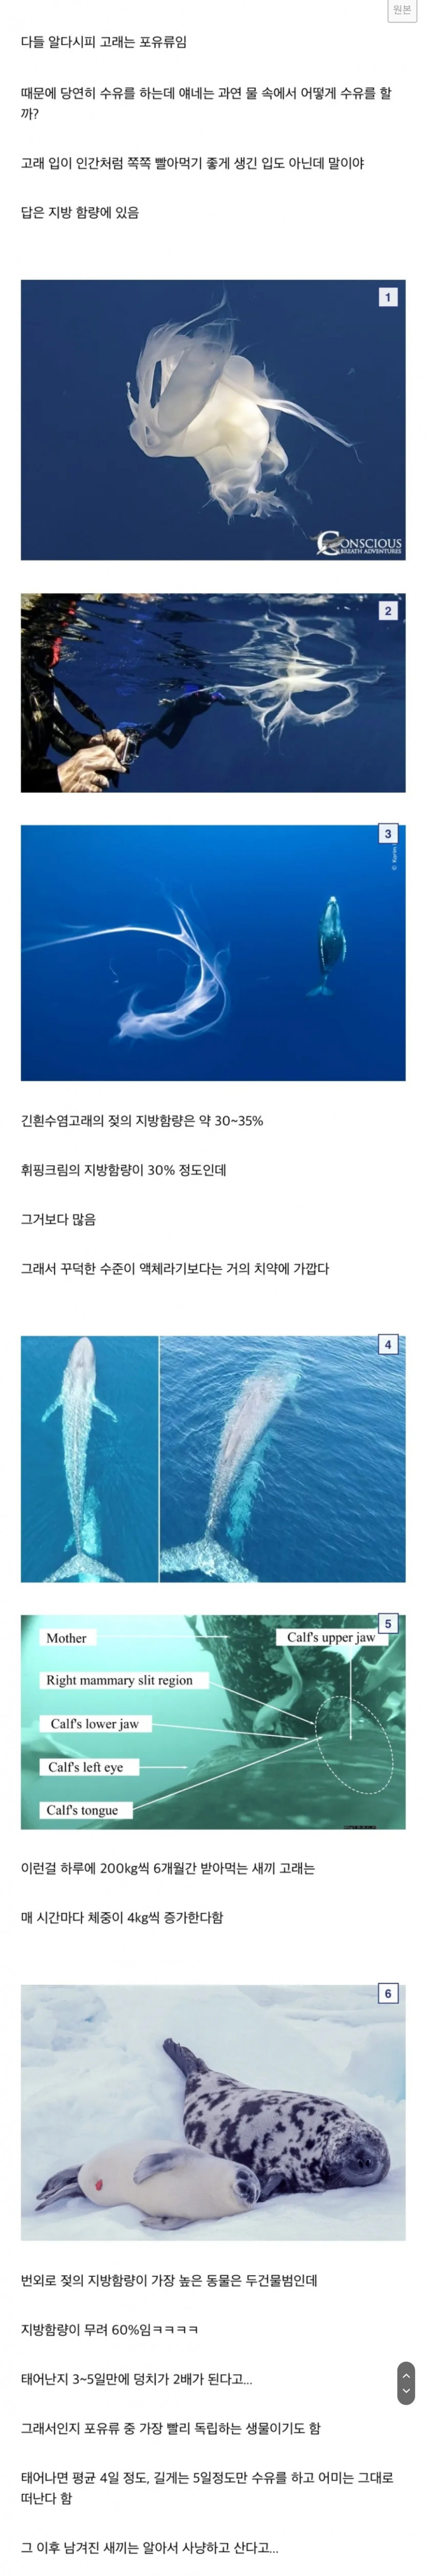 바다에서 수유를 하는 고래 젖과 세상에서 가장 진한 젖(0)